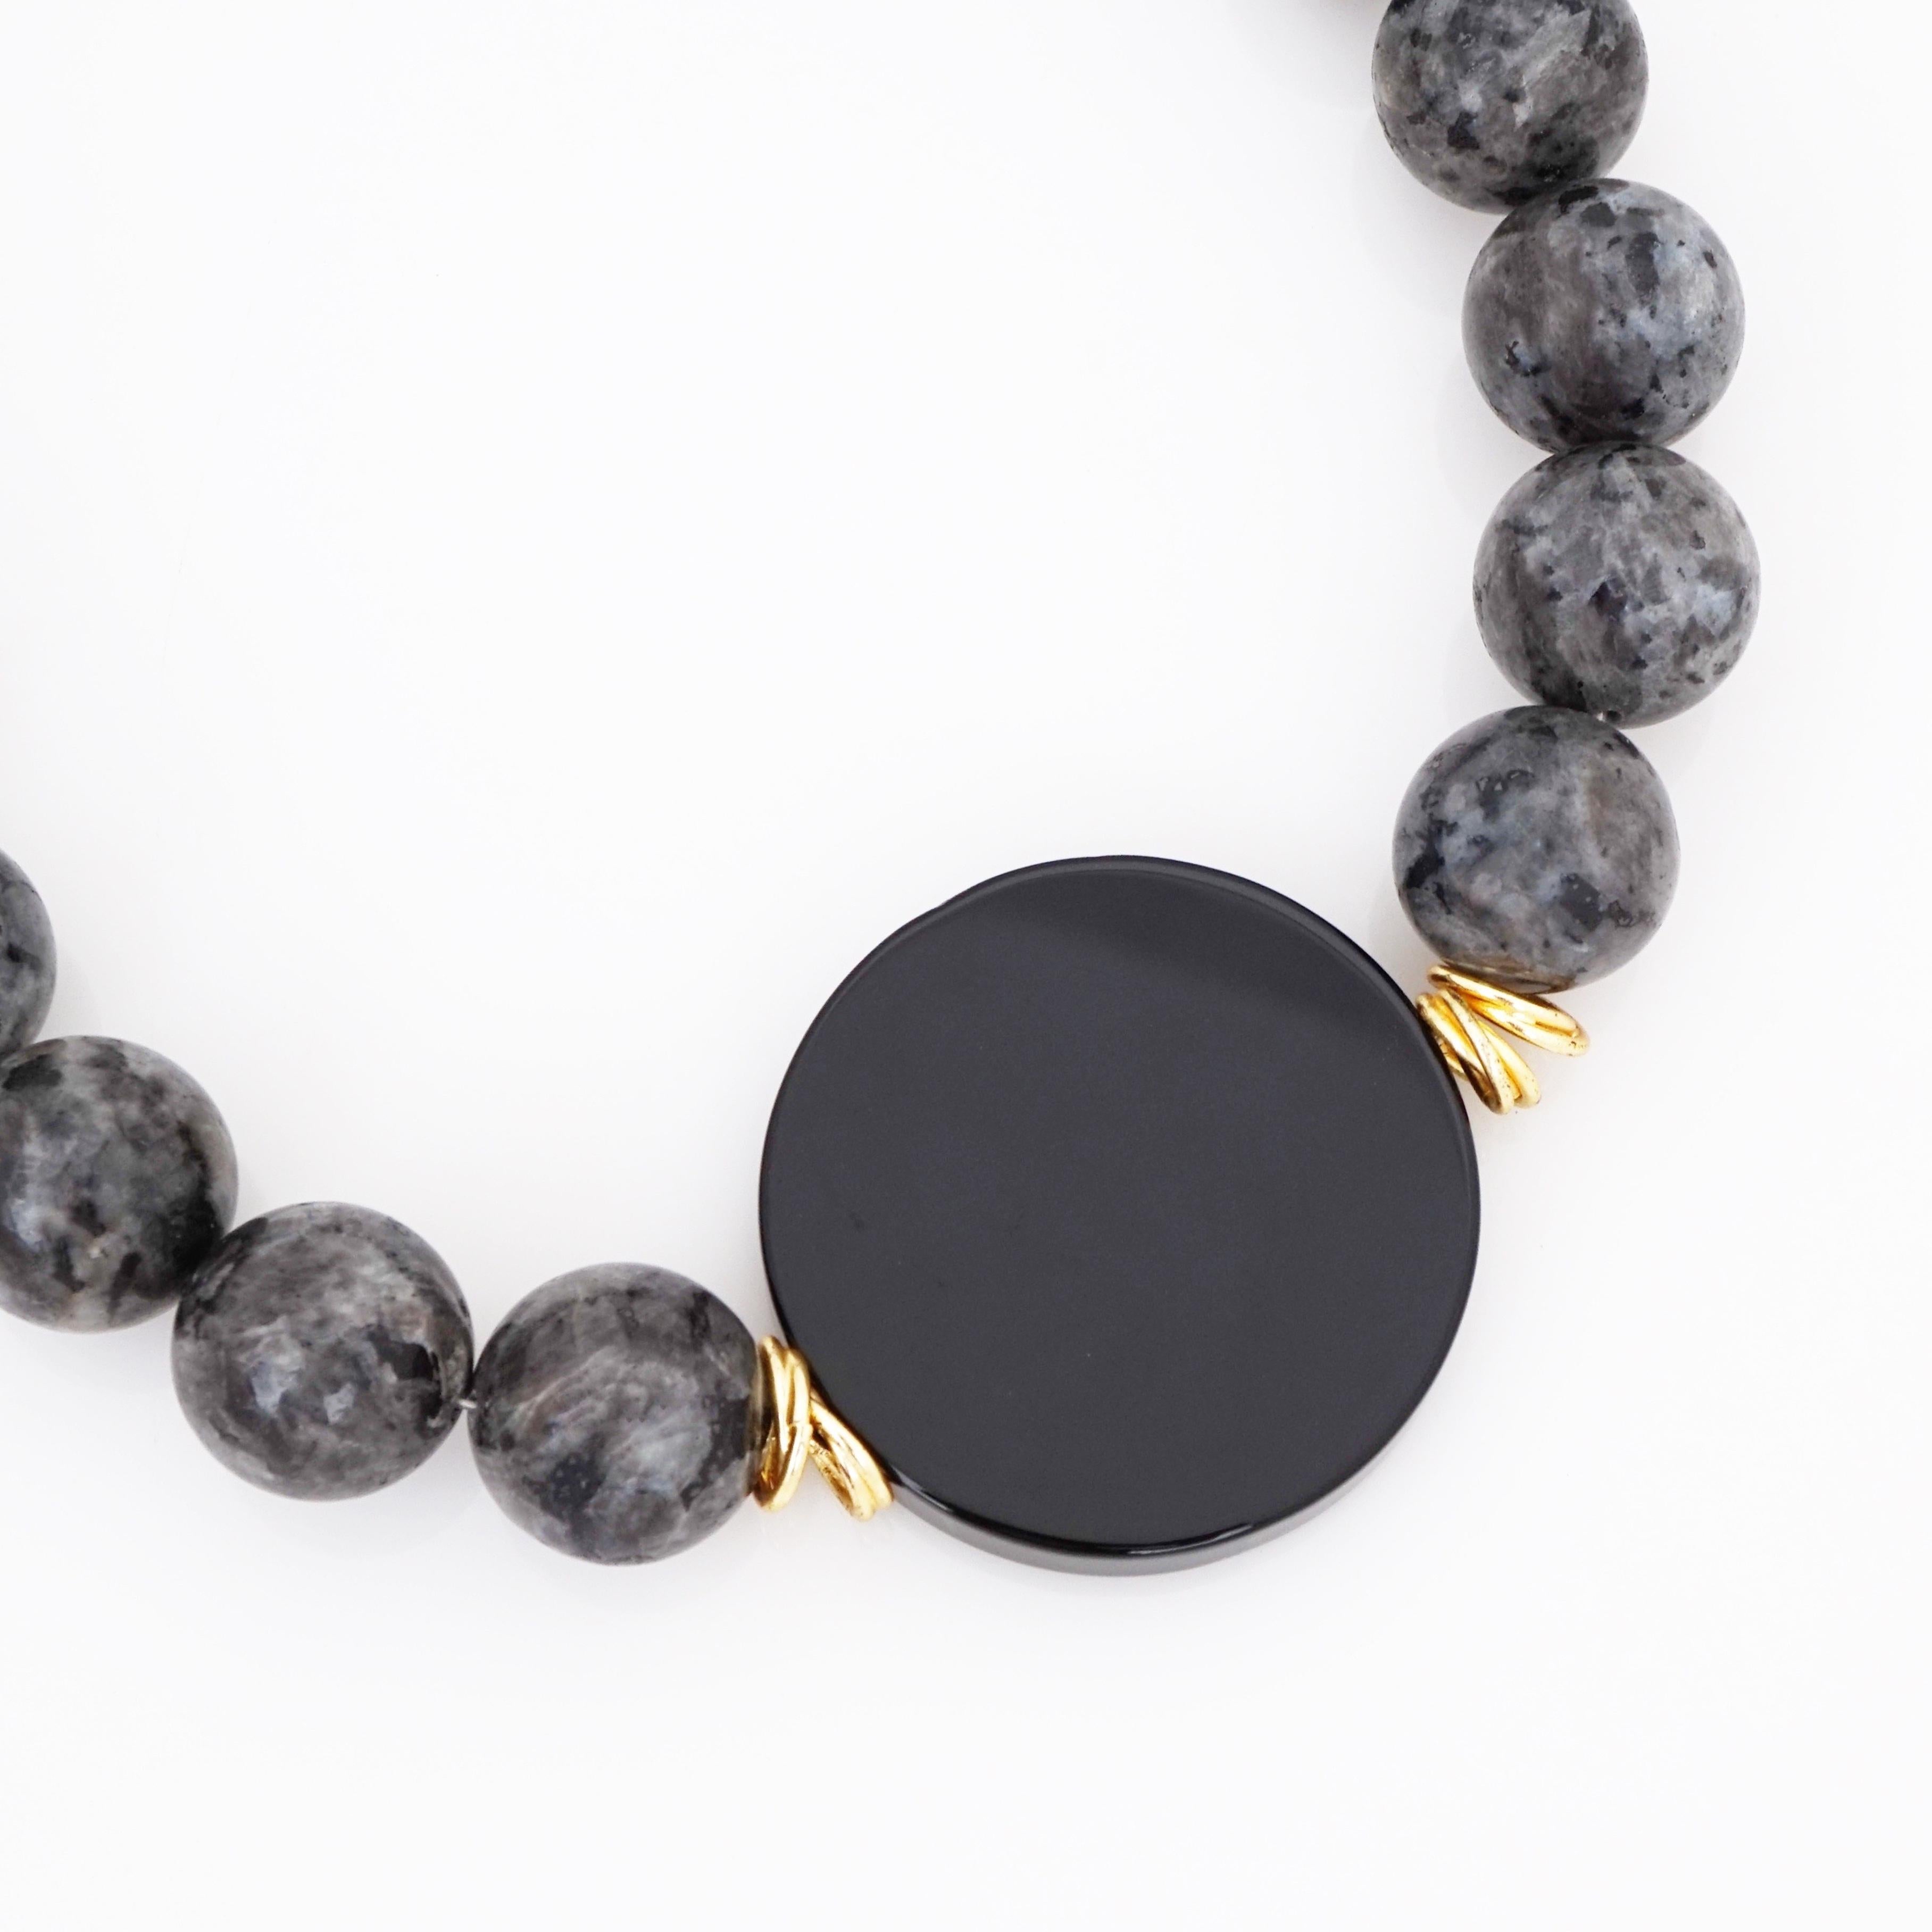 - Objet ancien

- Bijoux de collection des années 80

- longueur de 20 pouces

- 20mm perles de labradorite noire lisse et polie

- perle d'onyx circulaire lisse, polie et plate de 1,75